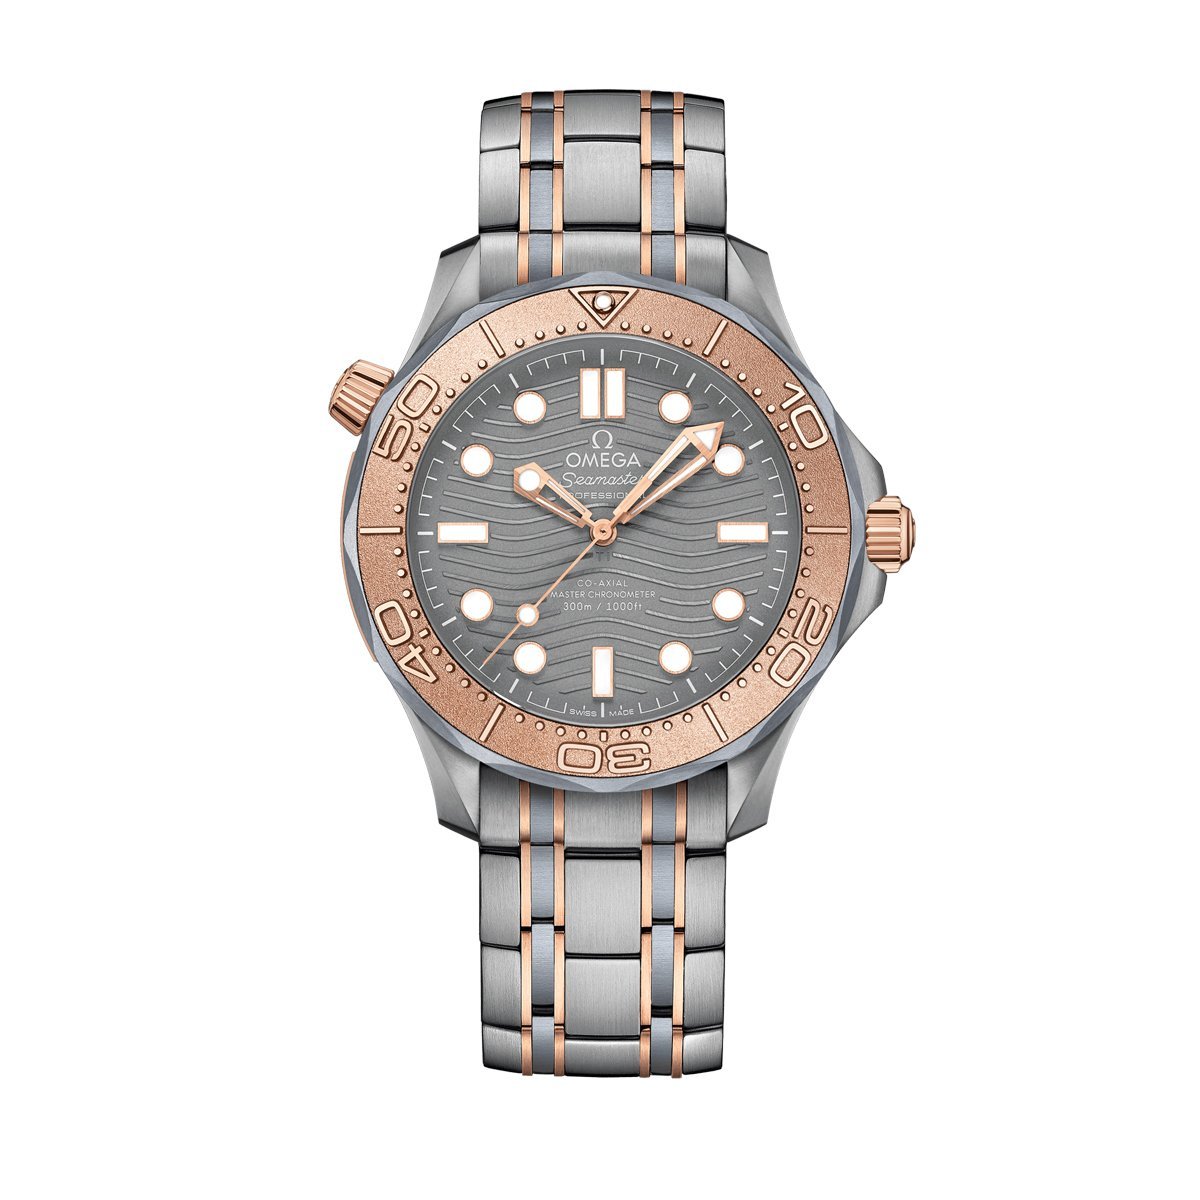 Seamaster Diver 300m Titanium Sedna™ Gold 42mm Watch